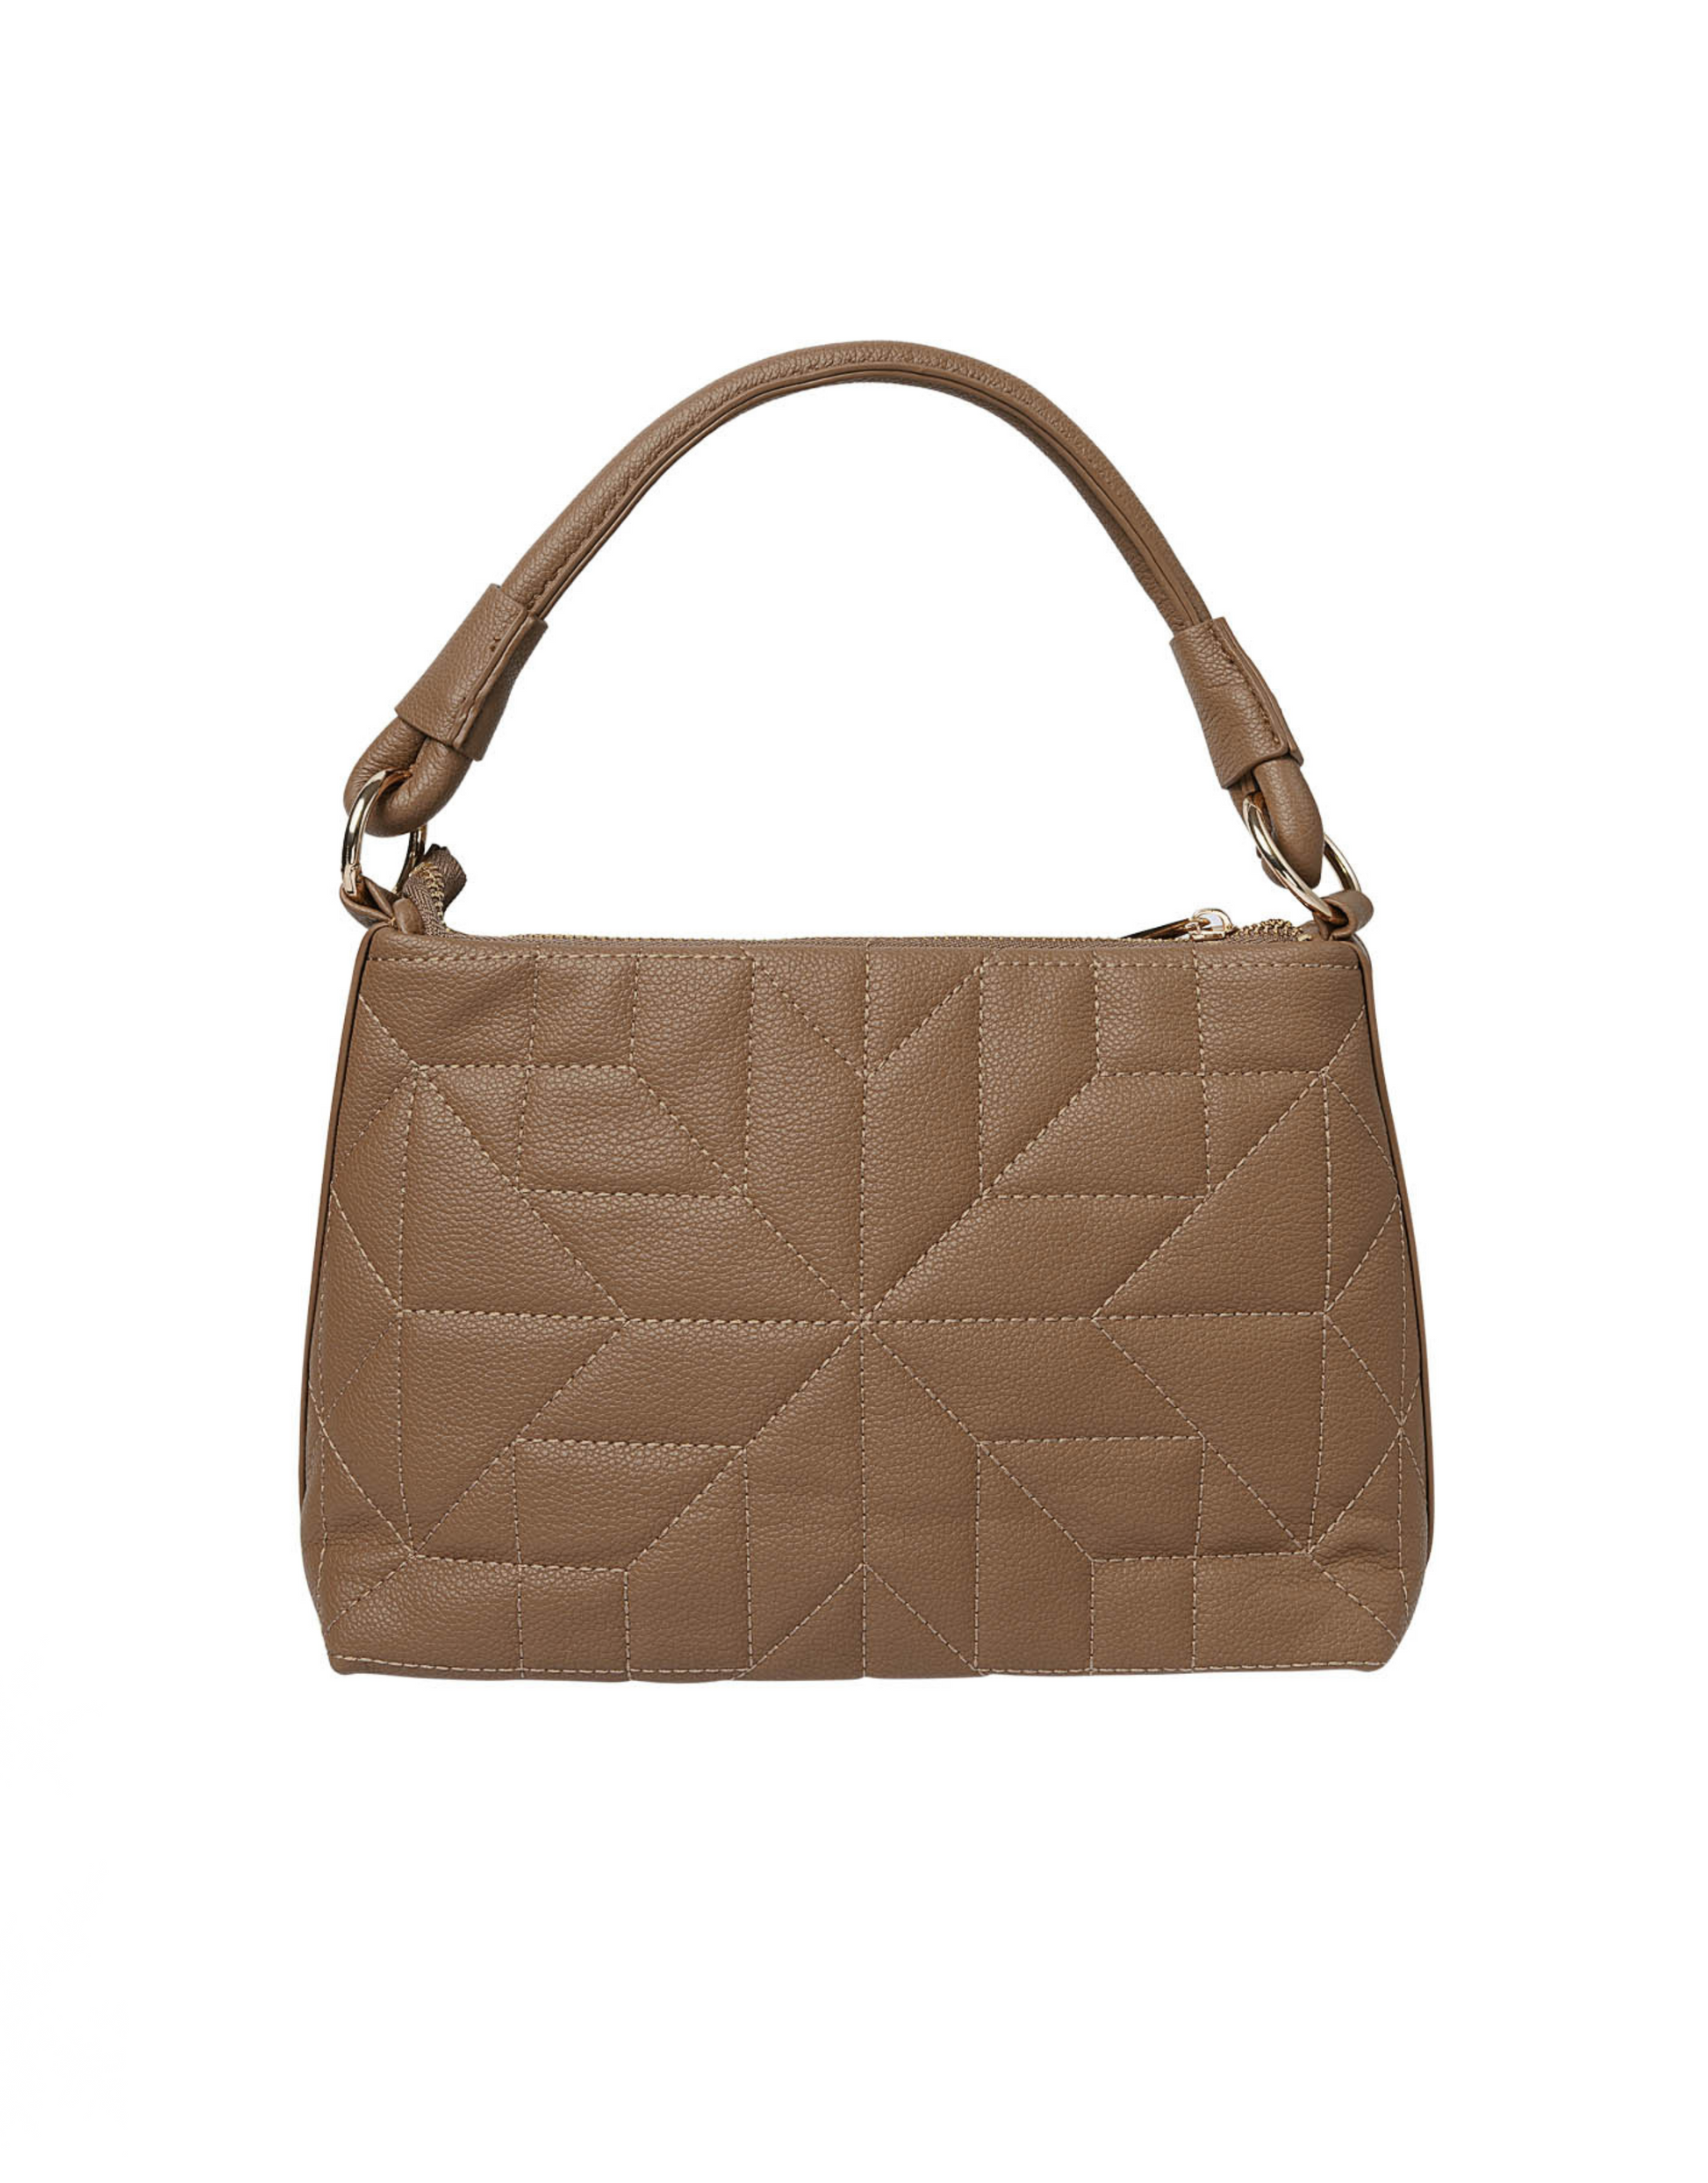 Smuk håndtaske i den flotteste brune farve!  Håndtasken har guld spænder og lås, for et ekstra unikt touch.  Tasken måler 6 x 18 x 28 centimeter.